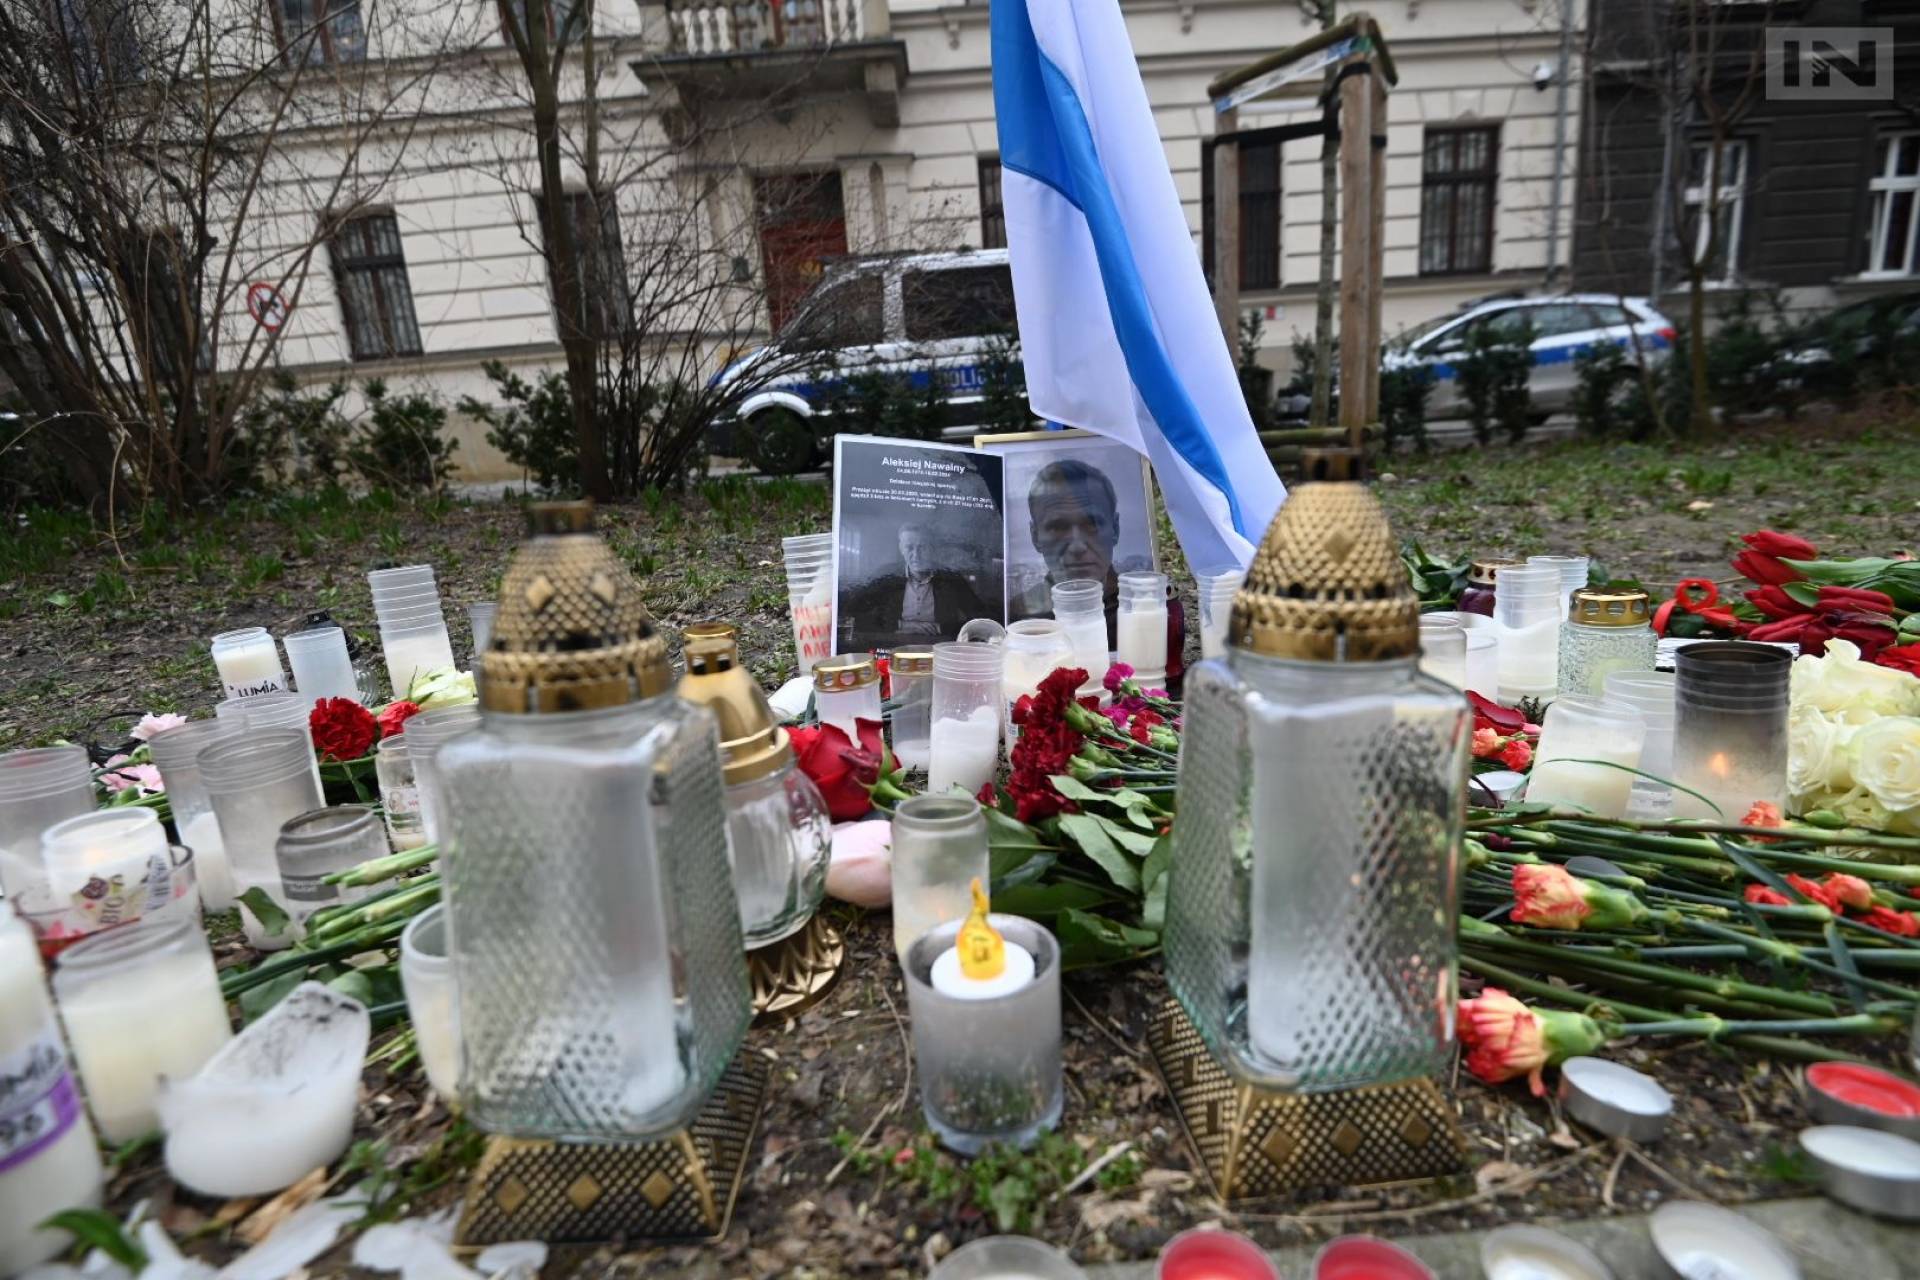 Zapalili znicze ku pamięci Aleksieja Nawalnego. Protest przed rosyjskim konsulatem